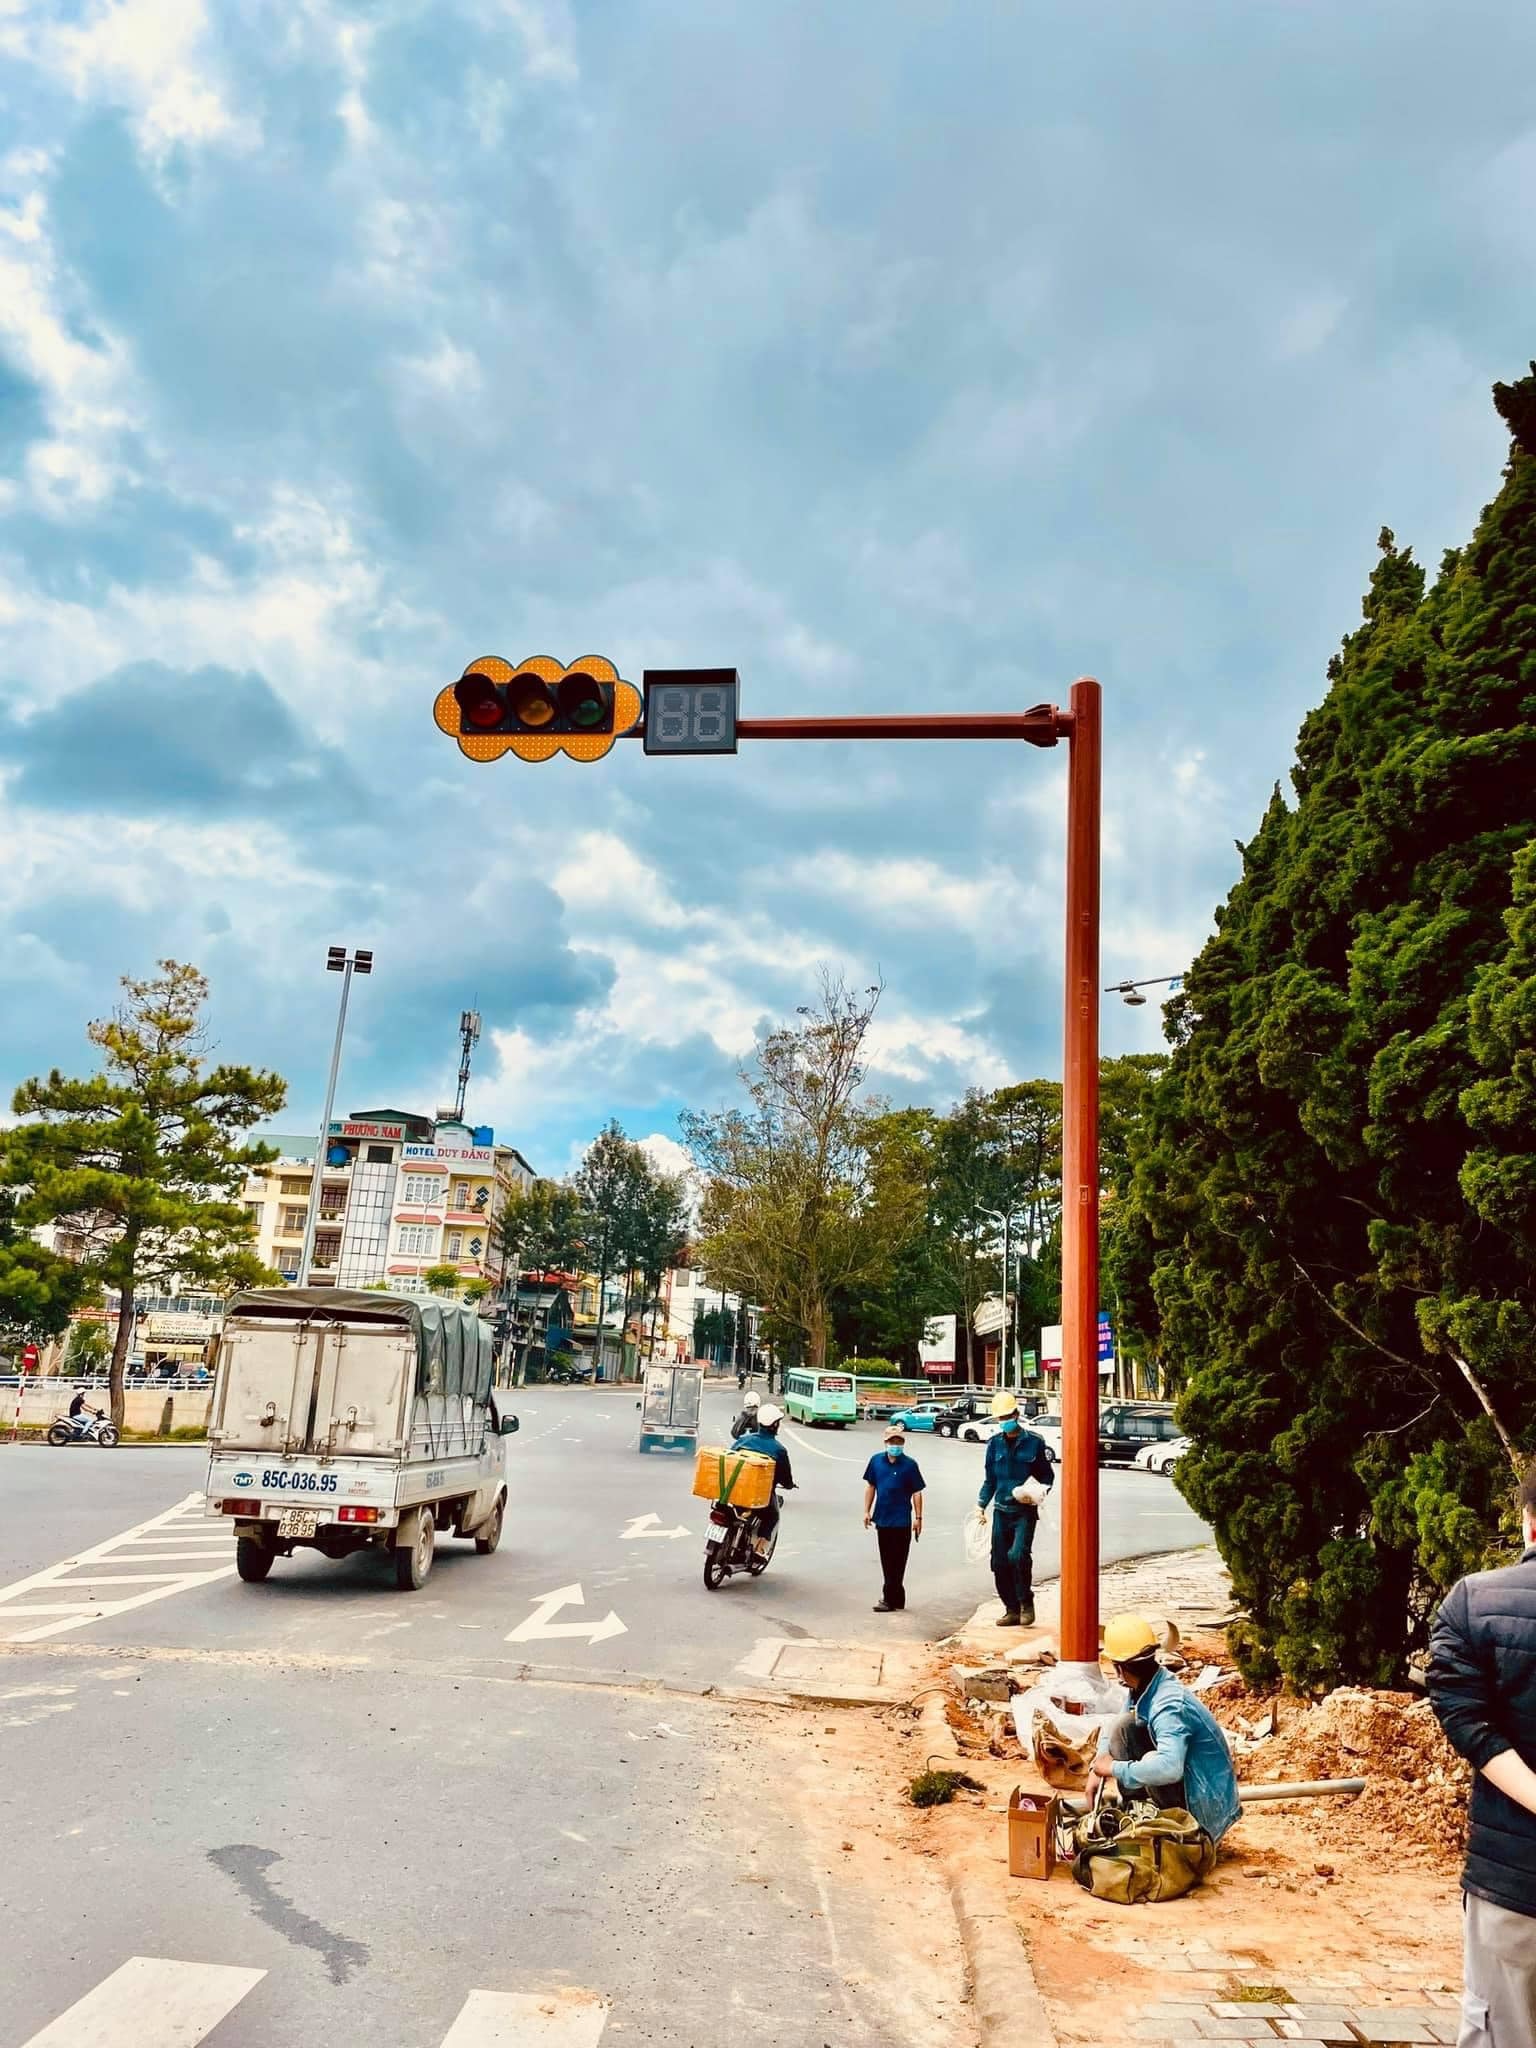 Đèn giao thông độc đáo không chỉ đem lại tính thẩm mỹ cao trong kiến trúc đô thị, mà còn góp phần cải thiện và đảm bảo an toàn giao thông. Hãy cùng khám phá những ý tưởng sáng tạo và độc đáo về hệ thống đèn giao thông trên khắp thế giới.